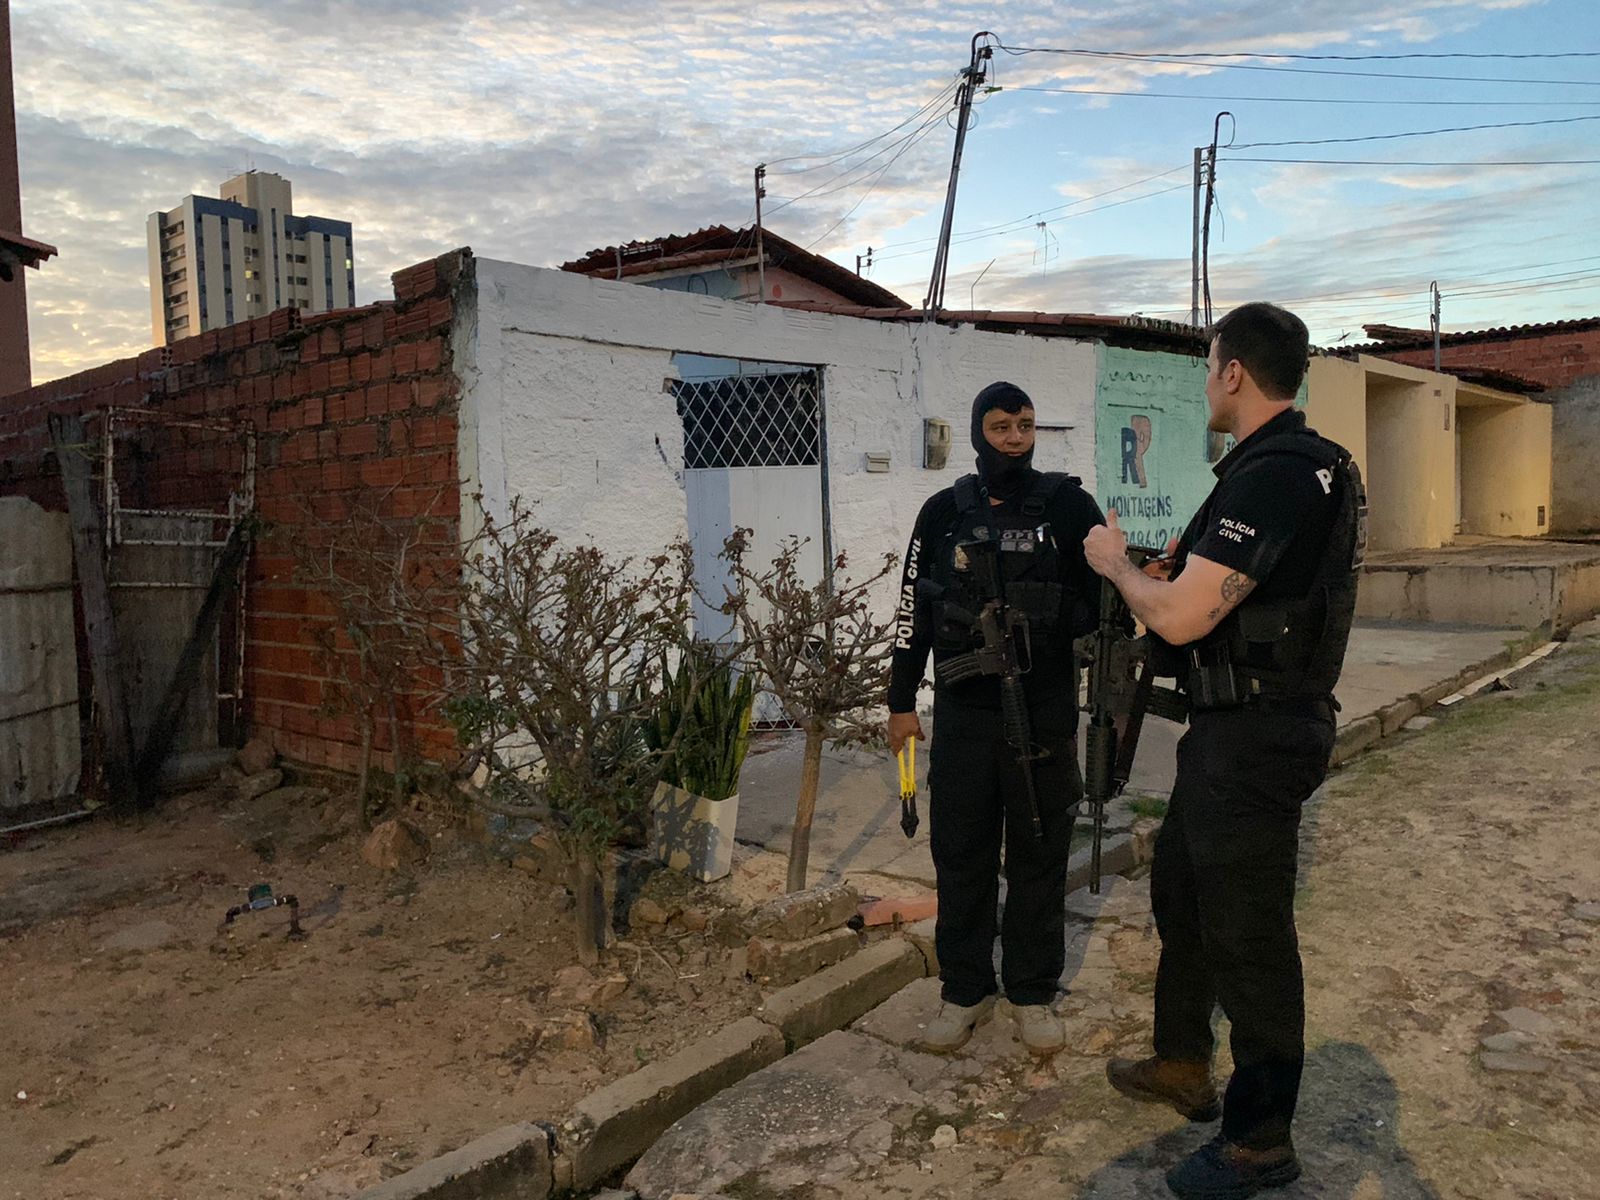 Cumprimentos foram concentrados em Teresina com equipes de diversas unidades policiais - Foto: Divulgação/SSP-PI